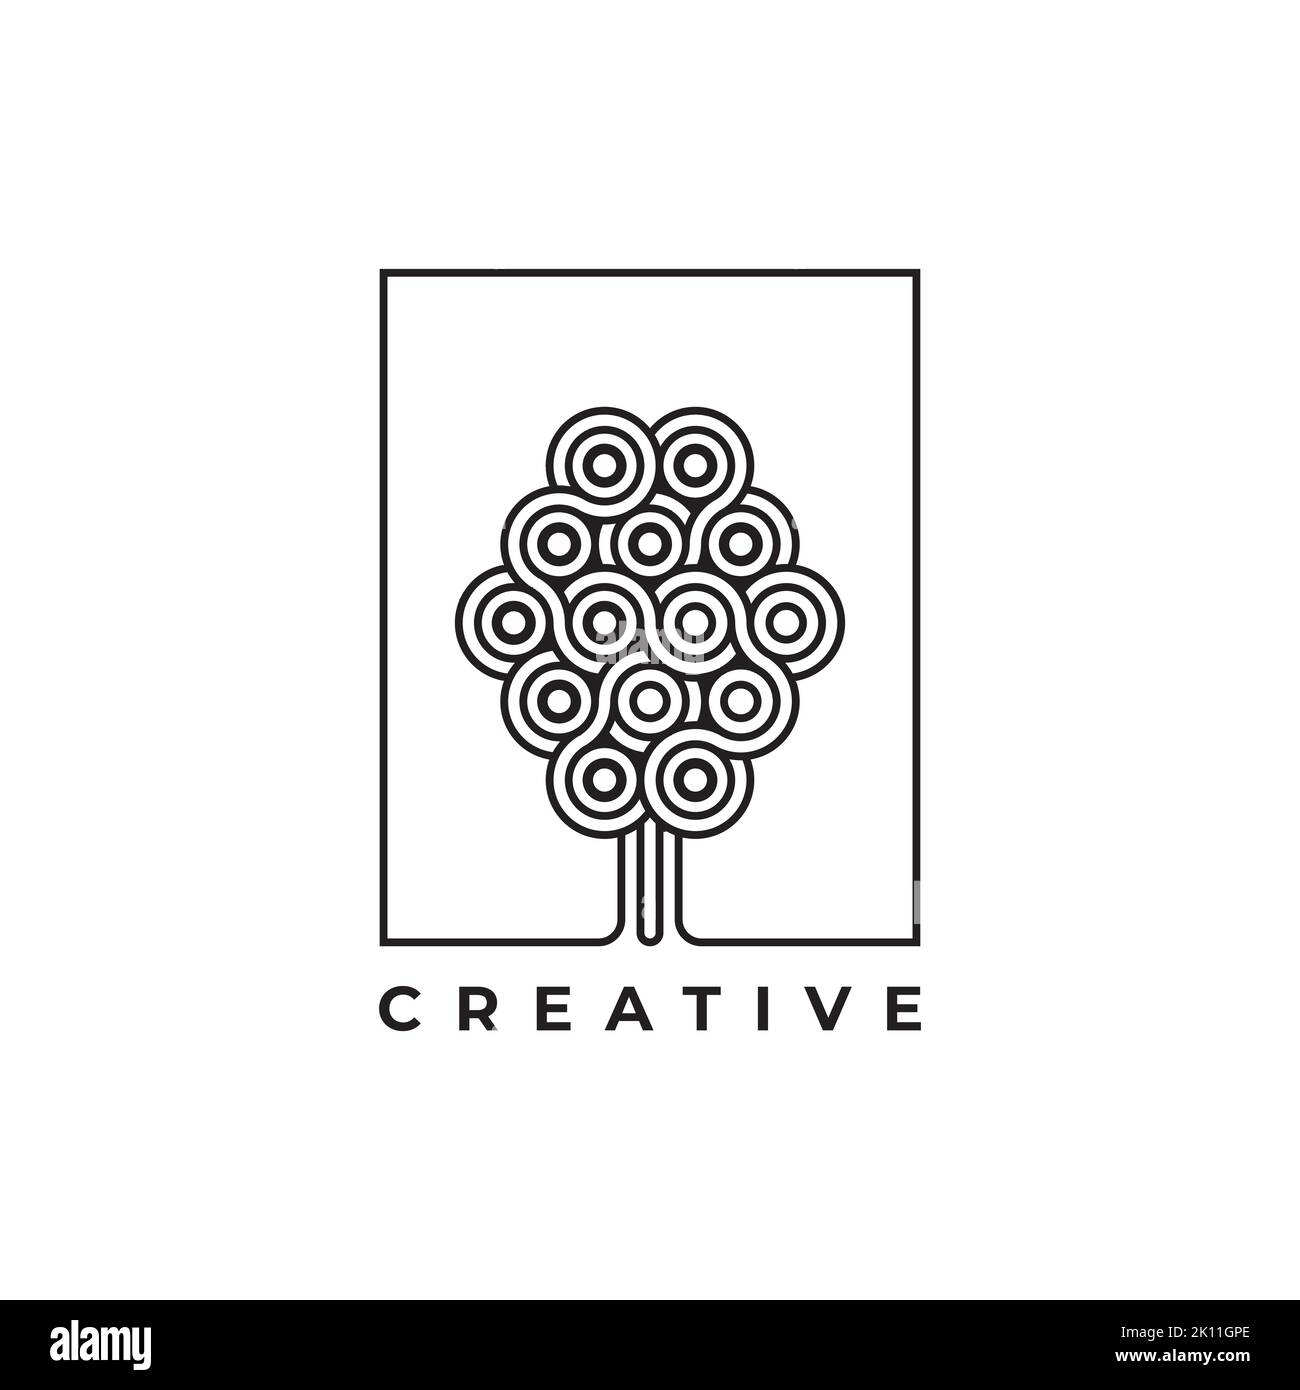 Design-Vorlage für abstraktes Baumlogo. Inspiration für kreatives Baumlogo Stock Vektor